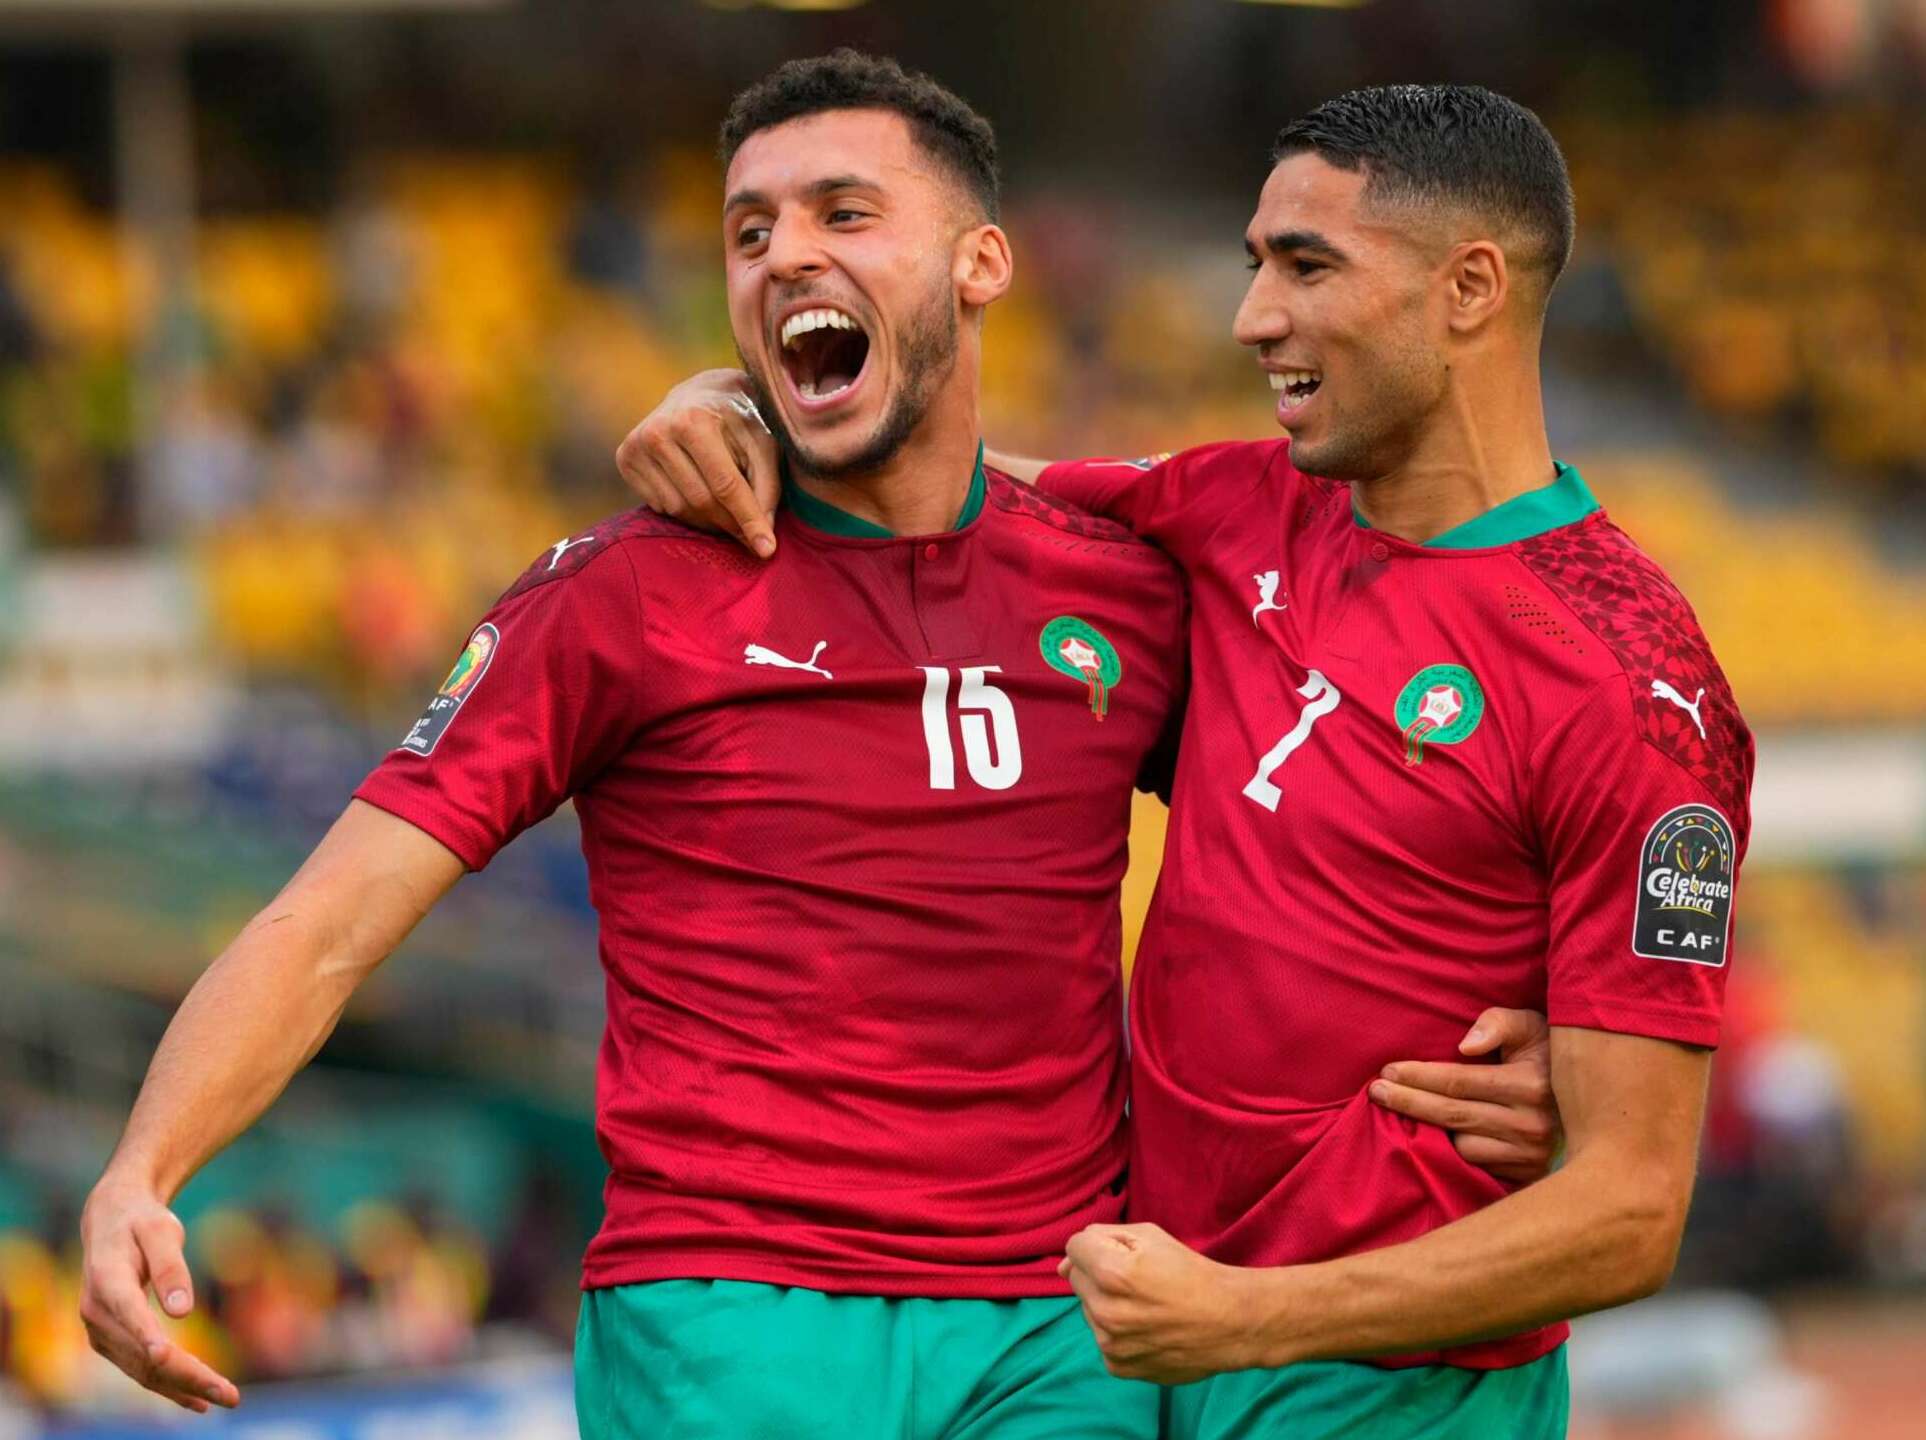 COPA AFRICANA DAS NAÇÕES: Invicto há 30 jogos, Marrocos ganha mais uma e garante vaga nas oitavas